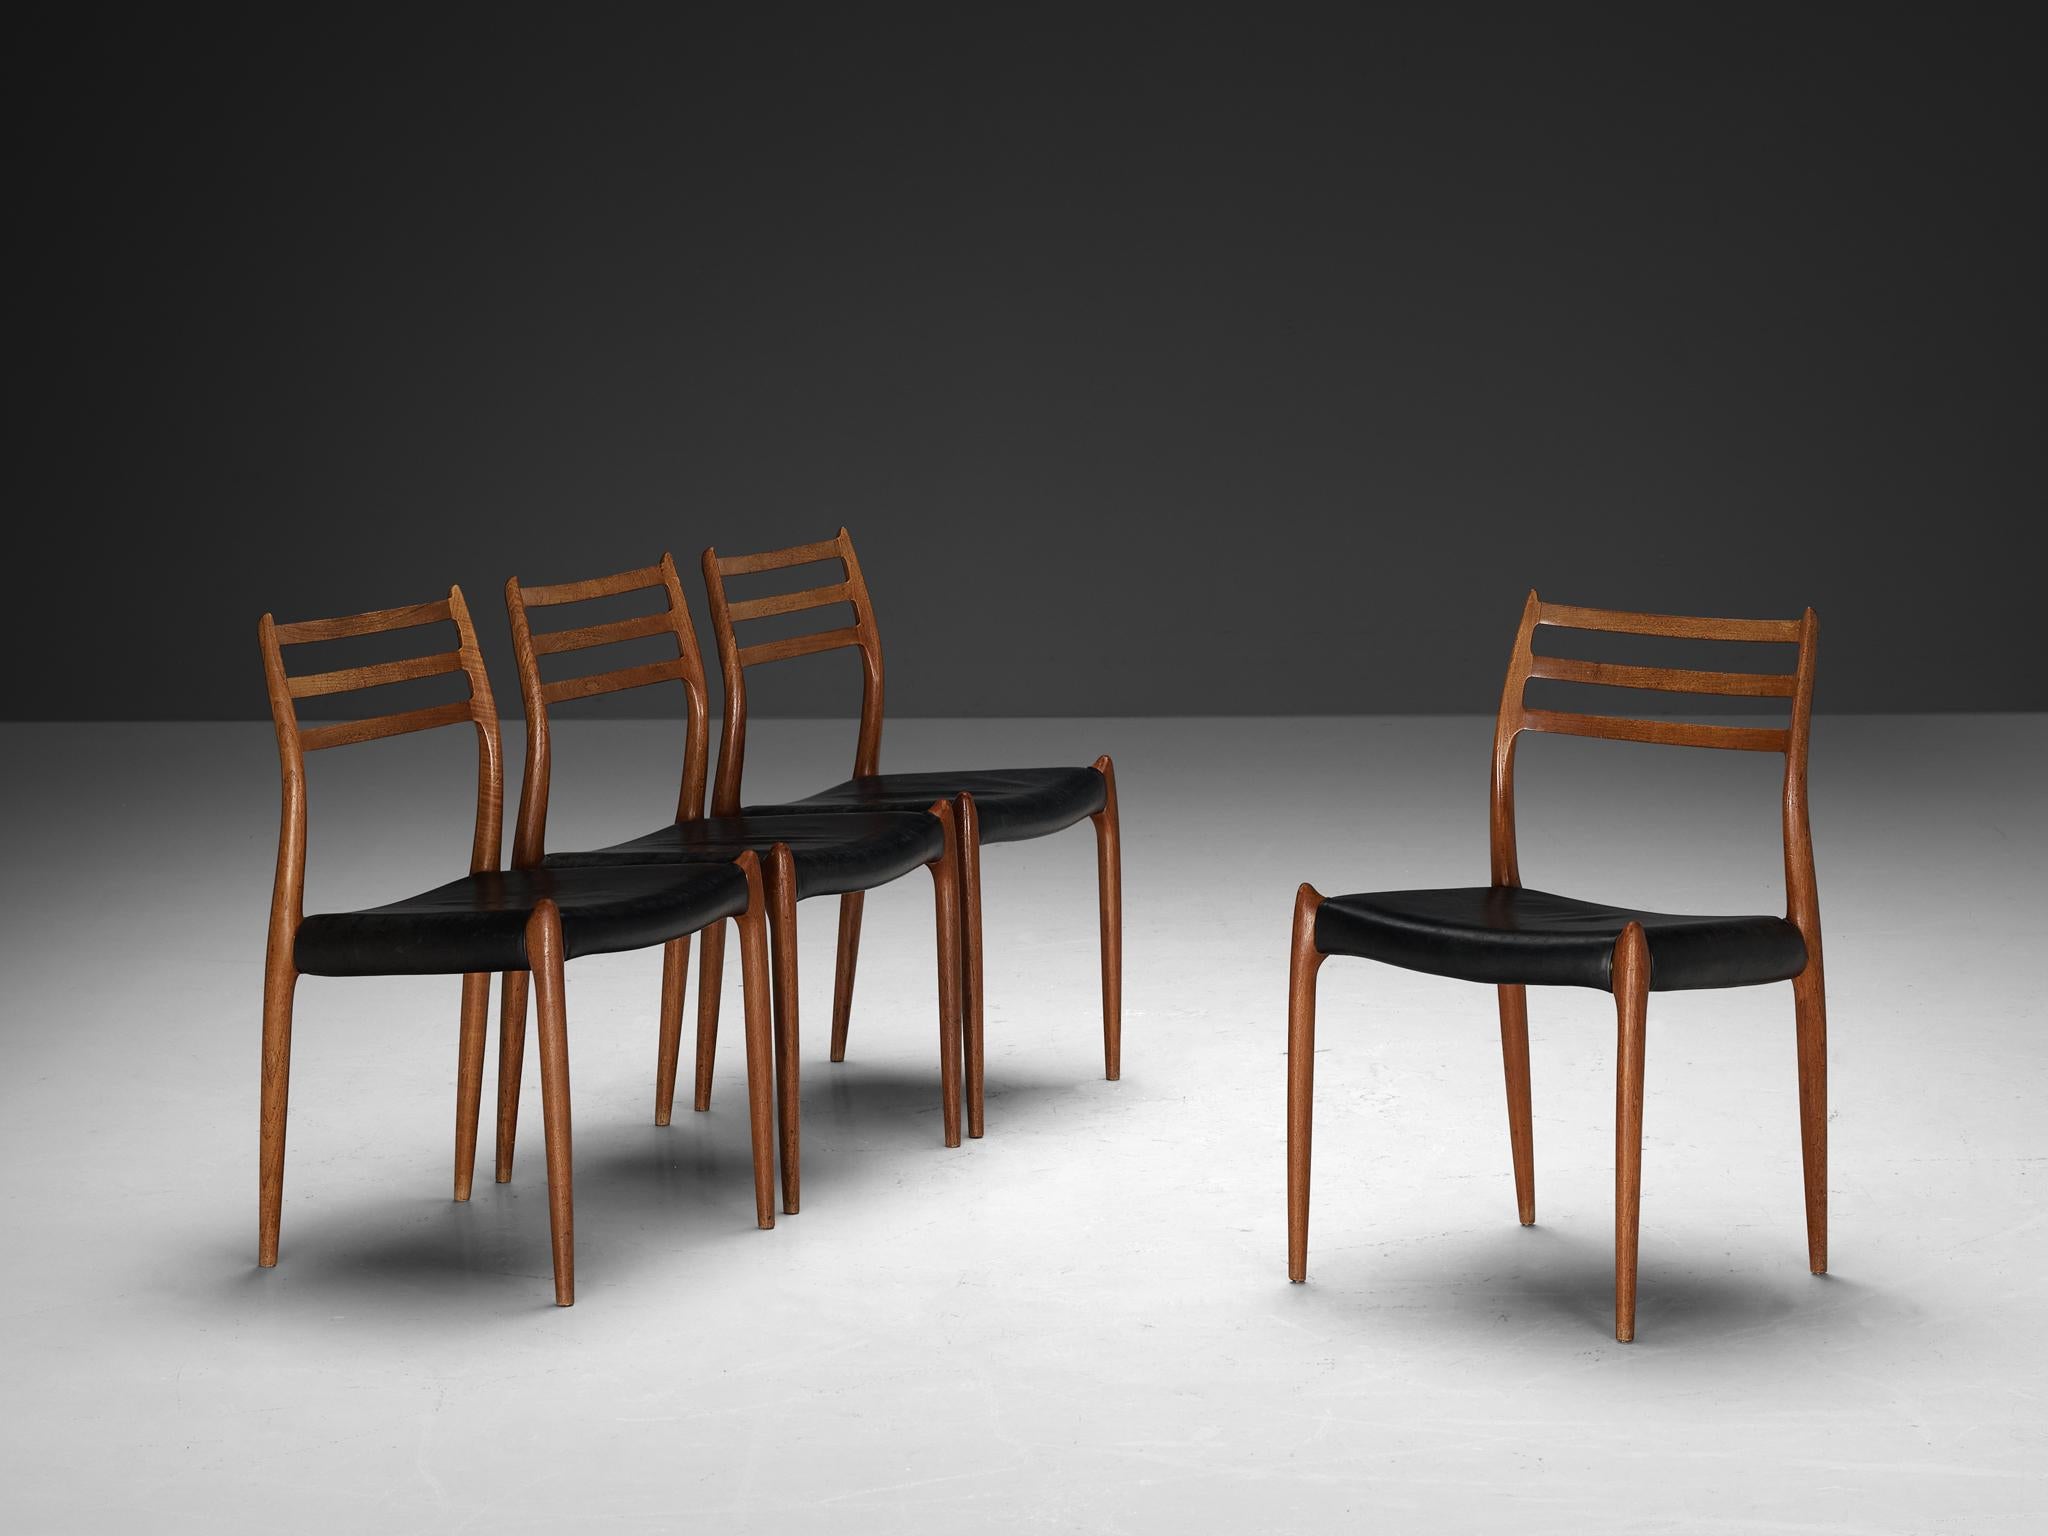 Niels Otto Møller, ensemble de quatre chaises de salle à manger, modèle 78, teck, cuir, Danemark, années 1960.

Un magnifique ensemble de salle à manger conçu par le danois Niels Otto Møller. Sculptées dans le grain riche et lustré du bois de teck,